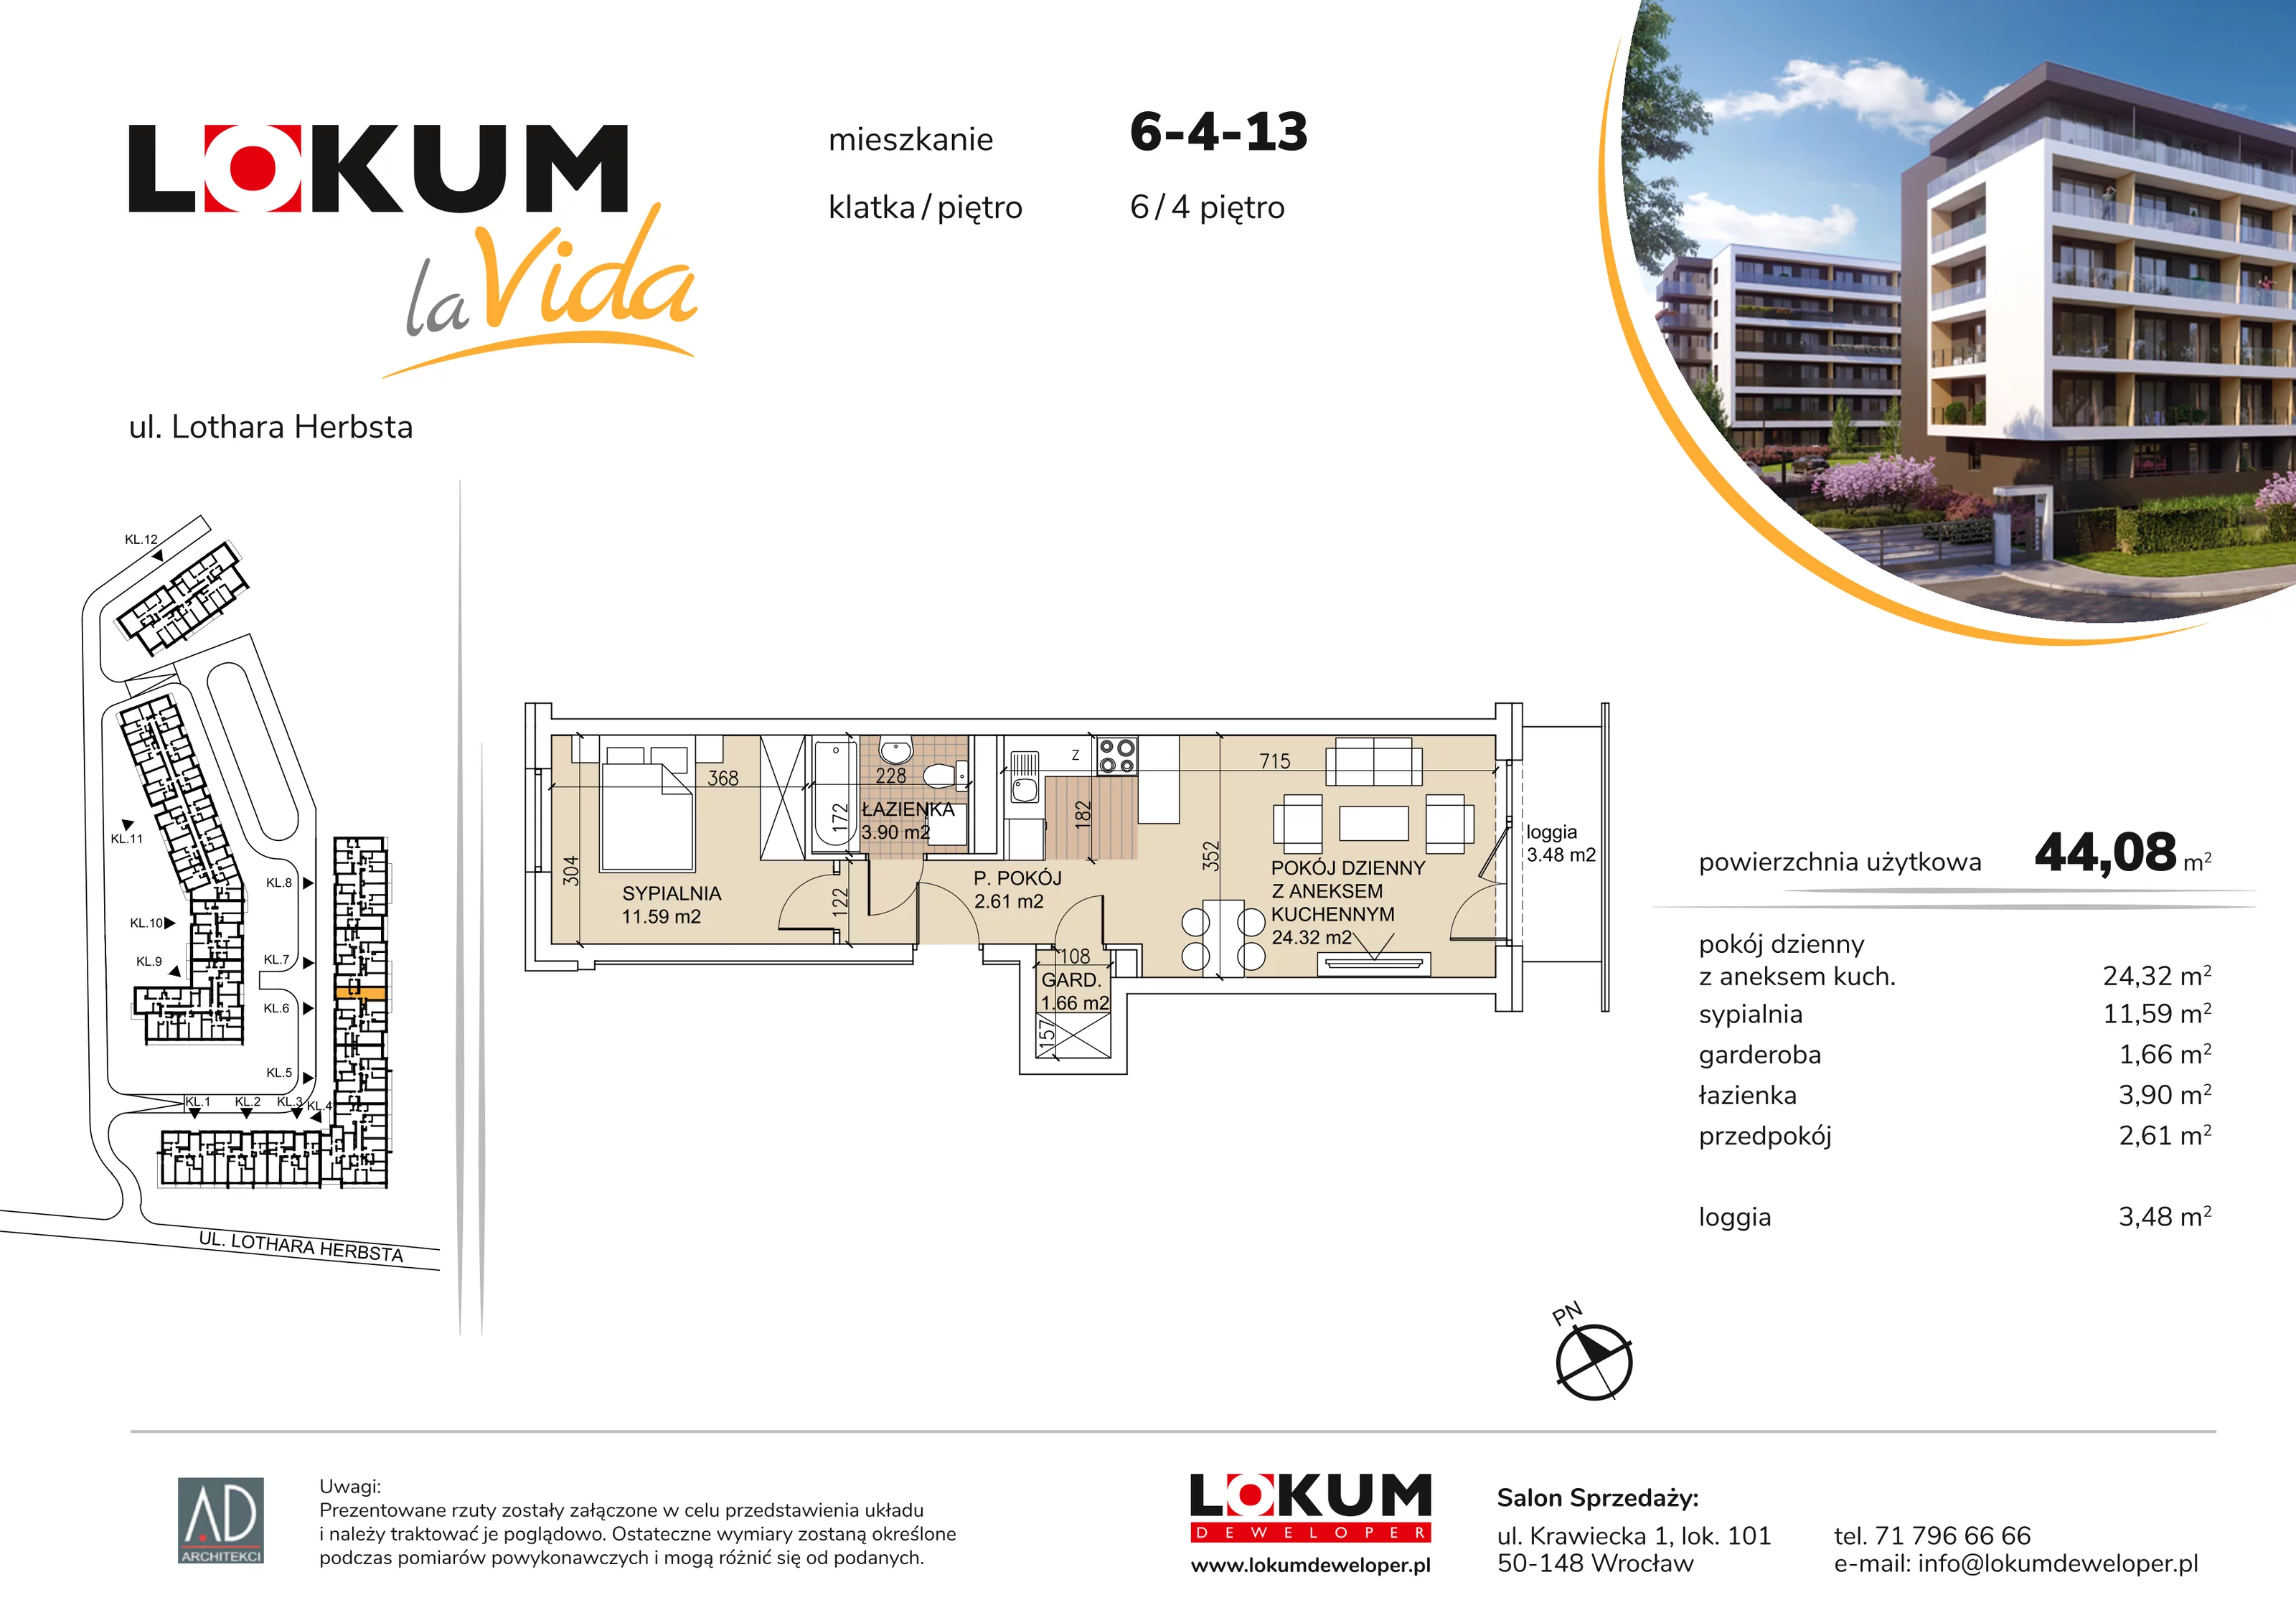 Mieszkanie 44,08 m², piętro 4, oferta nr 6-4-13, Lokum la Vida, Wrocław, Sołtysowice, ul. Lothara Herbsta